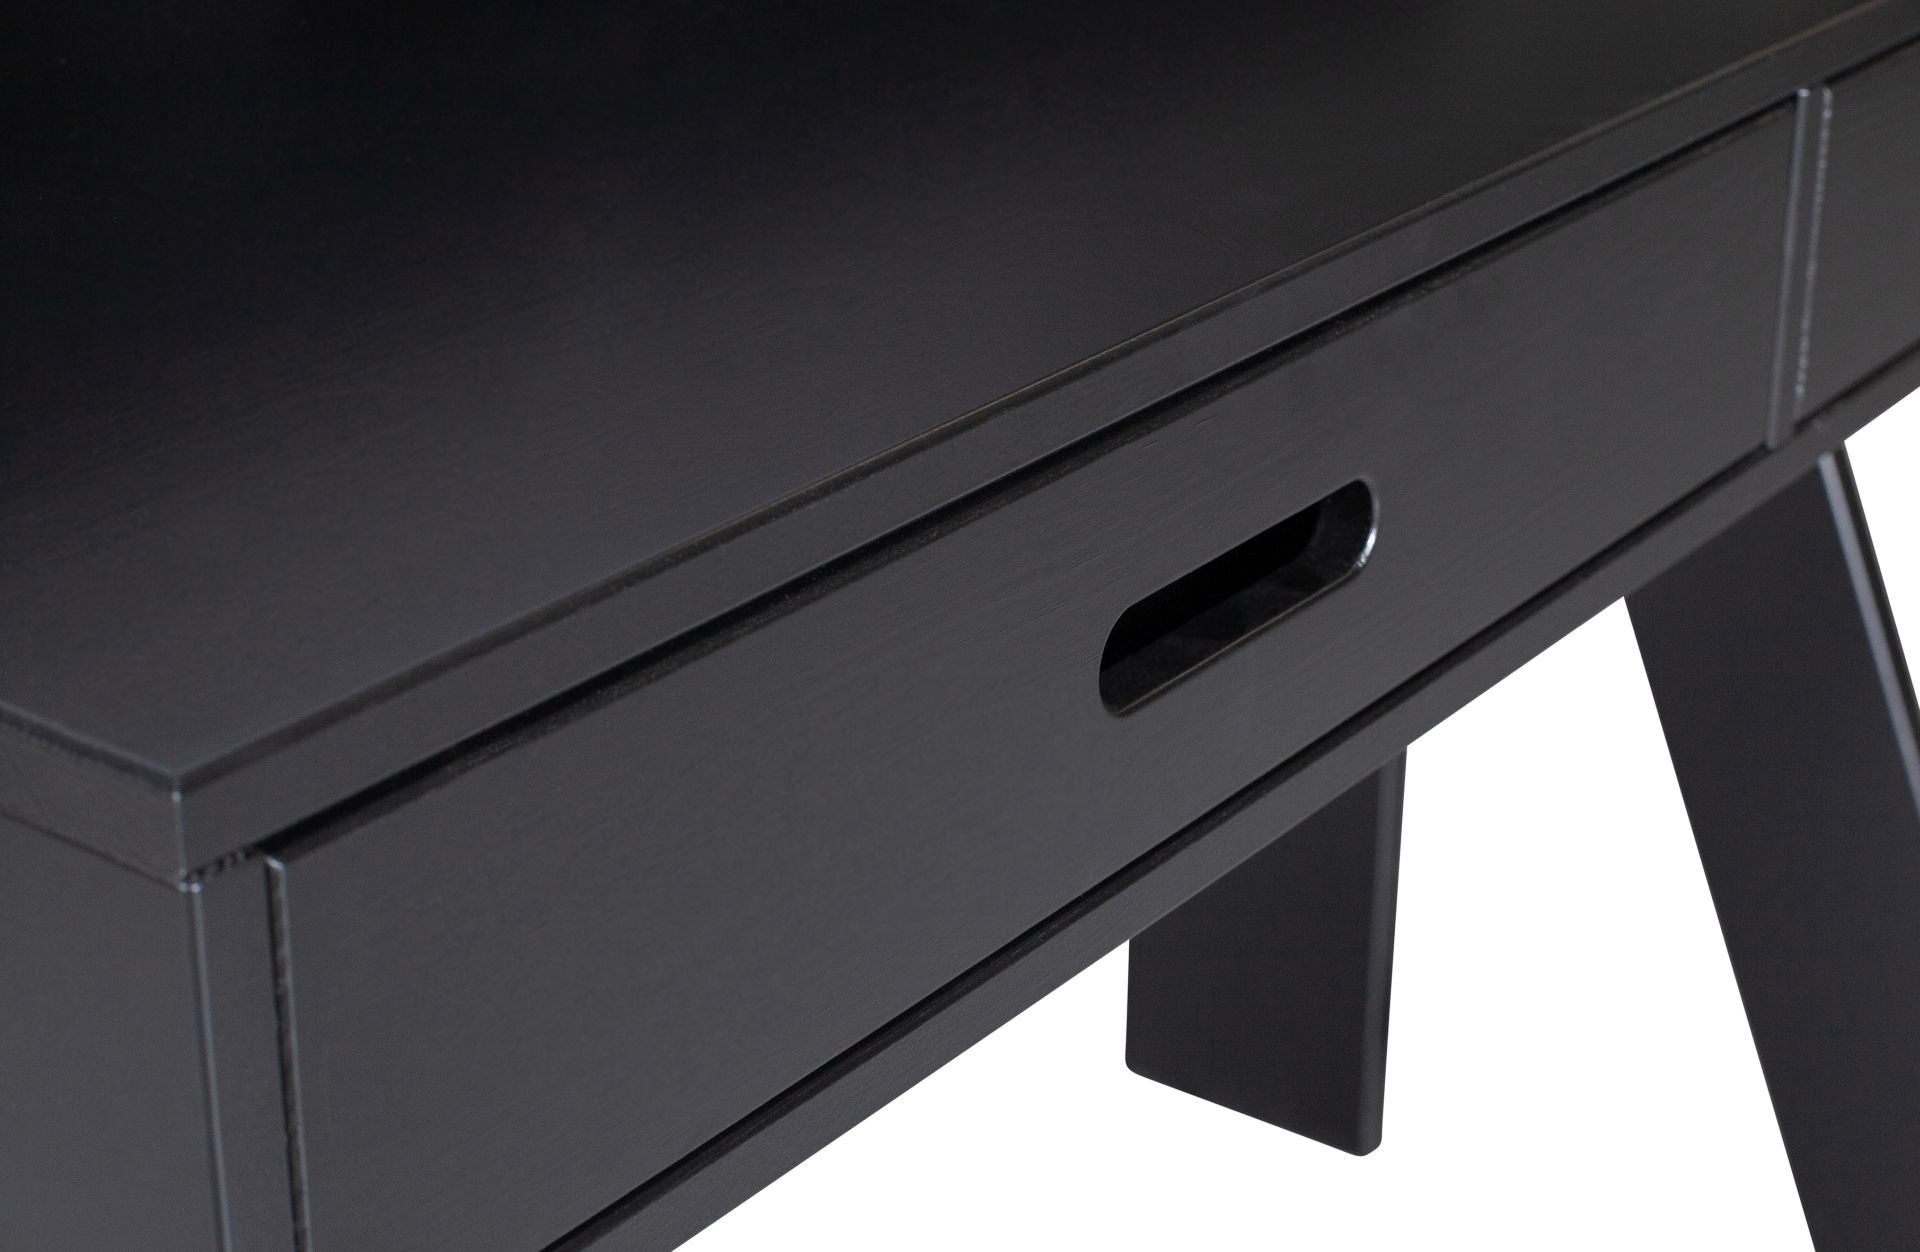 Der Schreibtisch Connect wurde aus Kiefernholz gefertigt. Er überzeugt mit seinem schlichten aber modernen Design. Der Schreibtisch verfügt über zwei Schubladen für diverse Utensilien und ist in einem schwarzen Farbton.